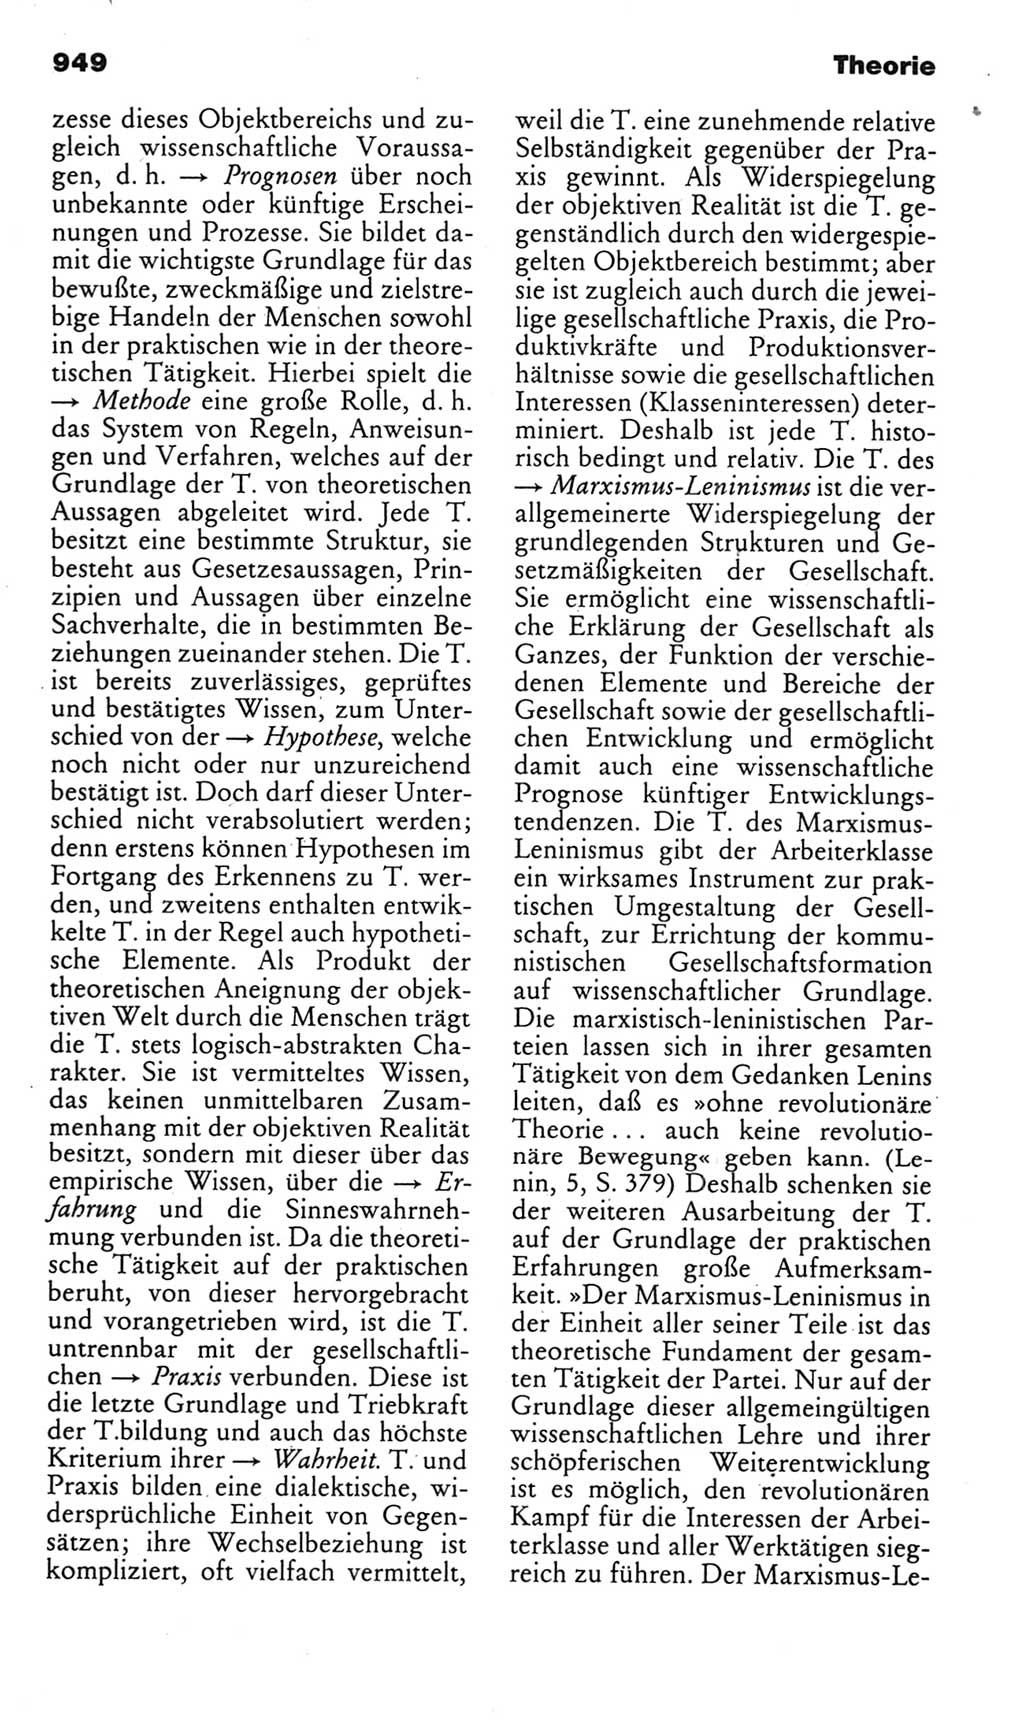 Kleines politisches Wörterbuch [Deutsche Demokratische Republik (DDR)] 1985, Seite 949 (Kl. pol. Wb. DDR 1985, S. 949)